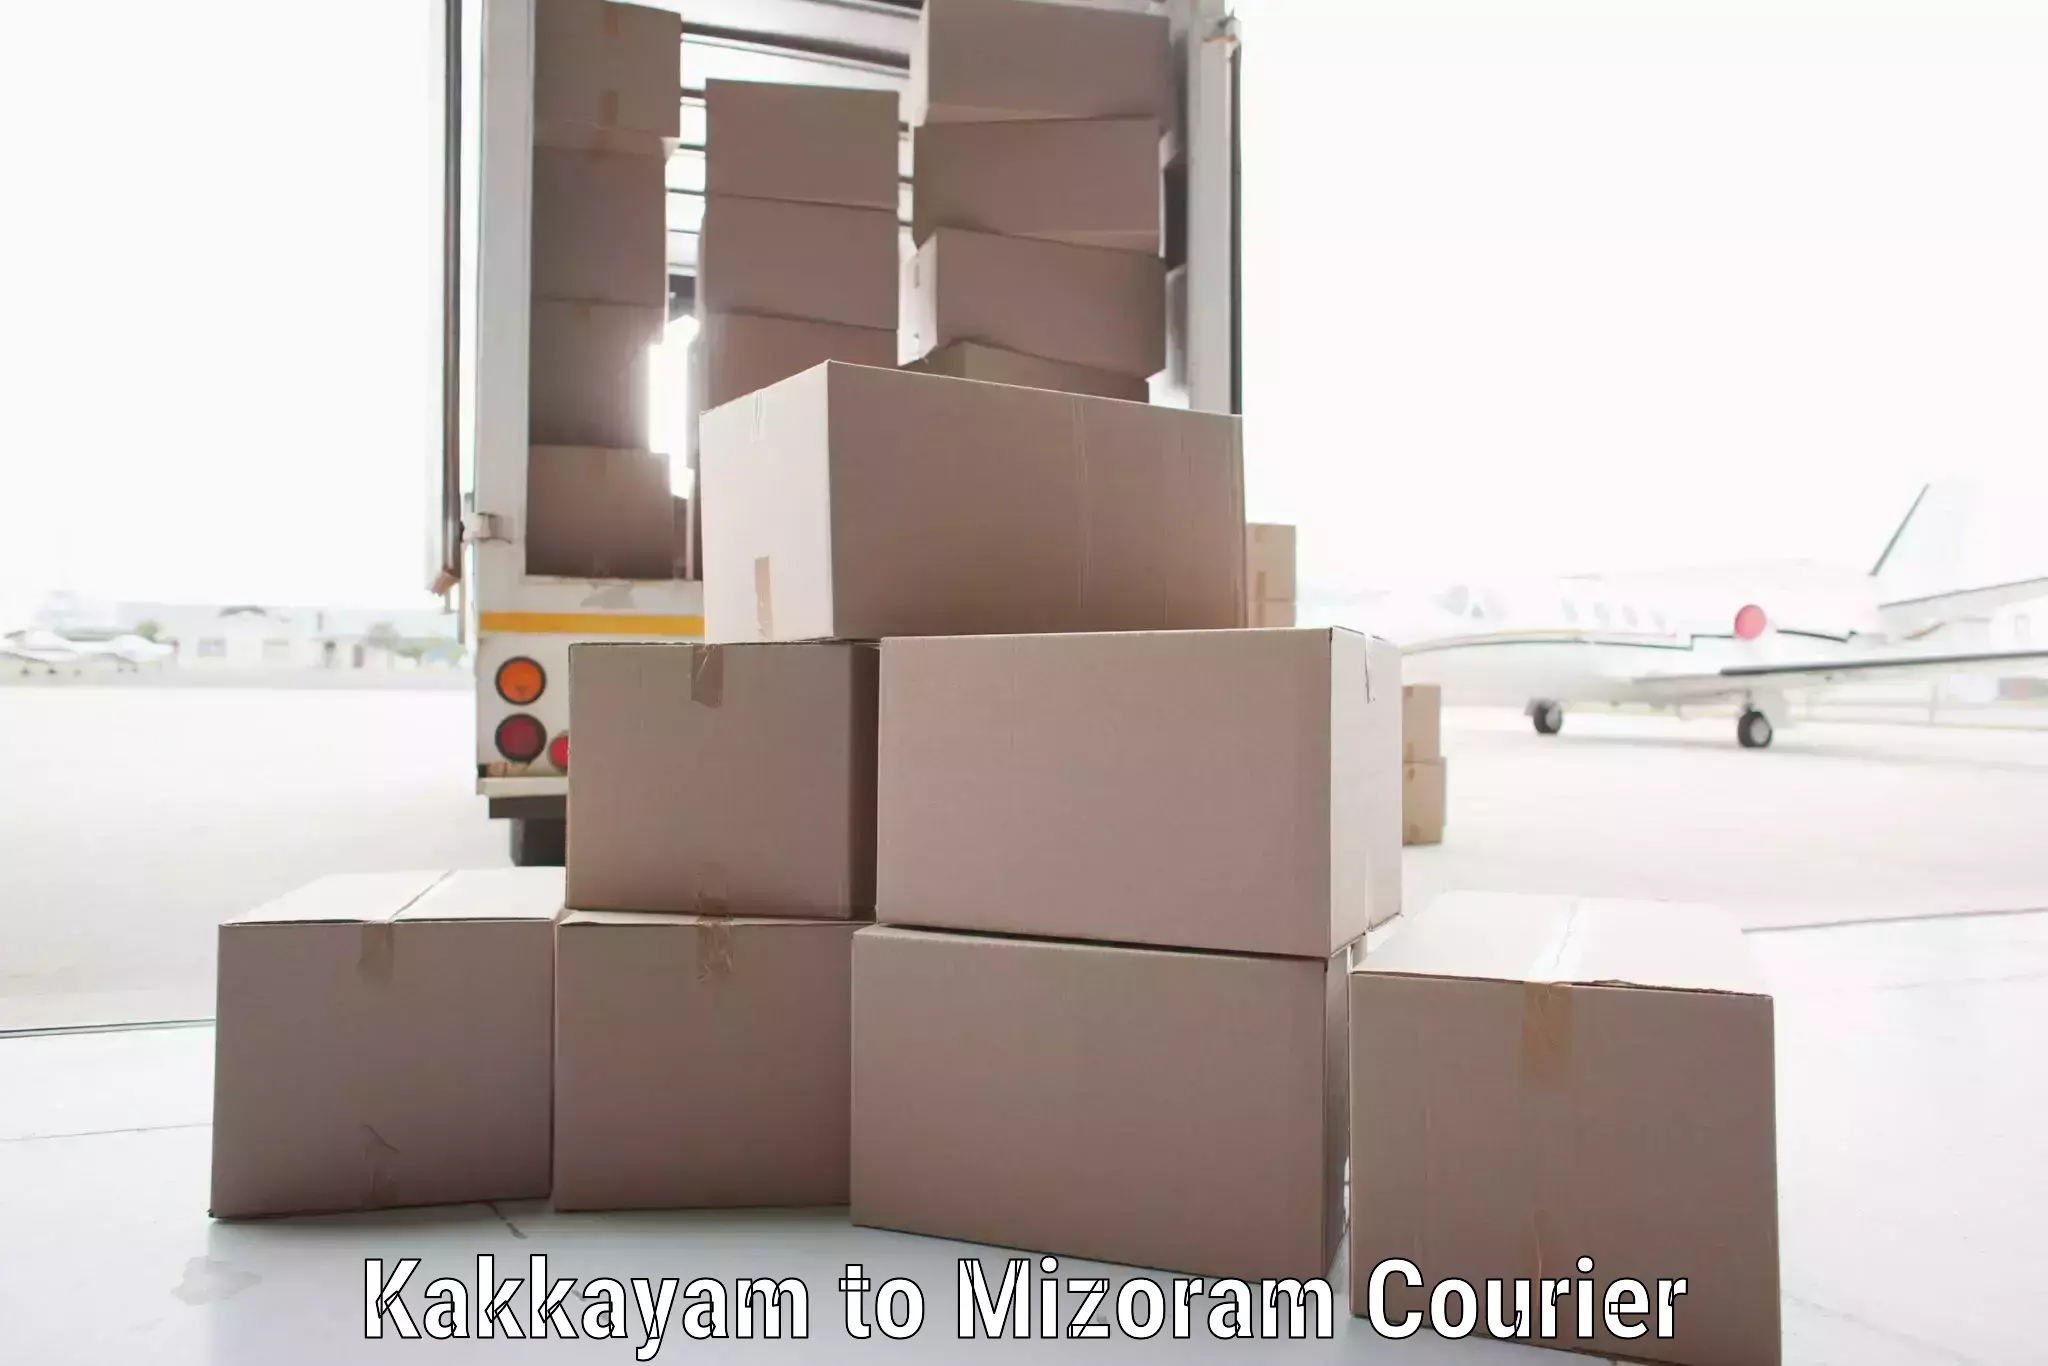 Efficient shipping platforms in Kakkayam to Aizawl